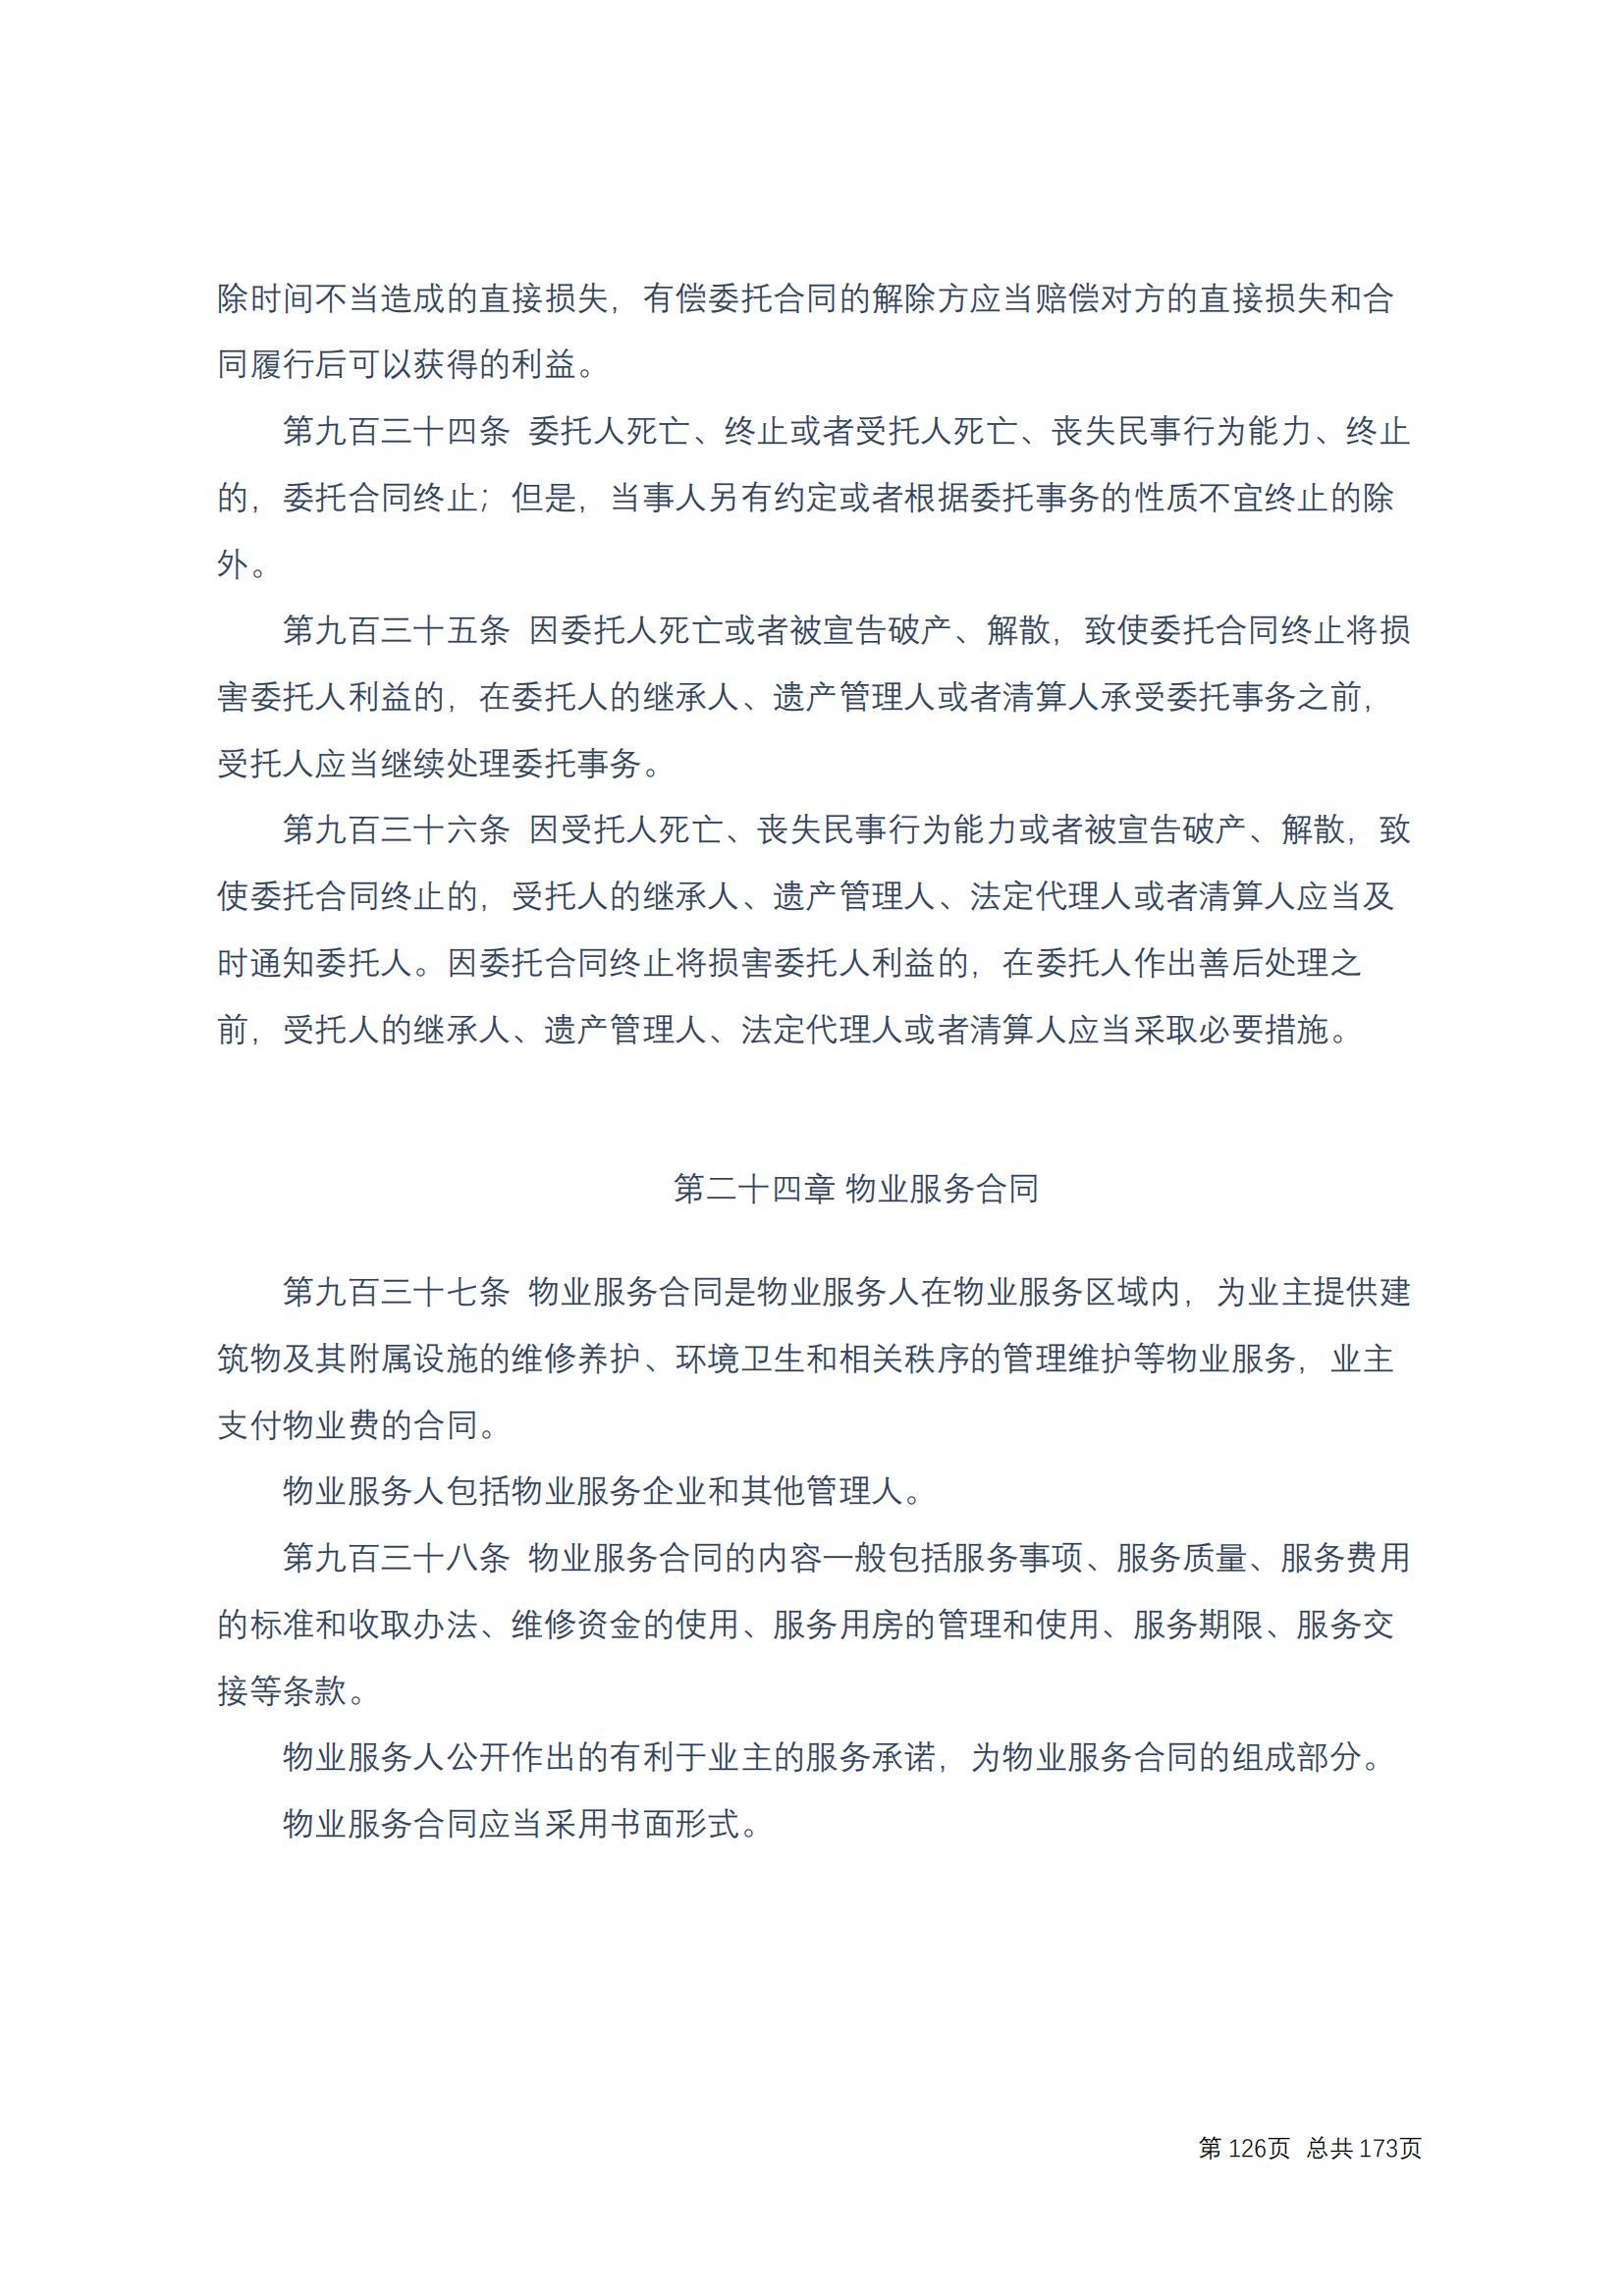 中华人民共和国民法典 修改过_125